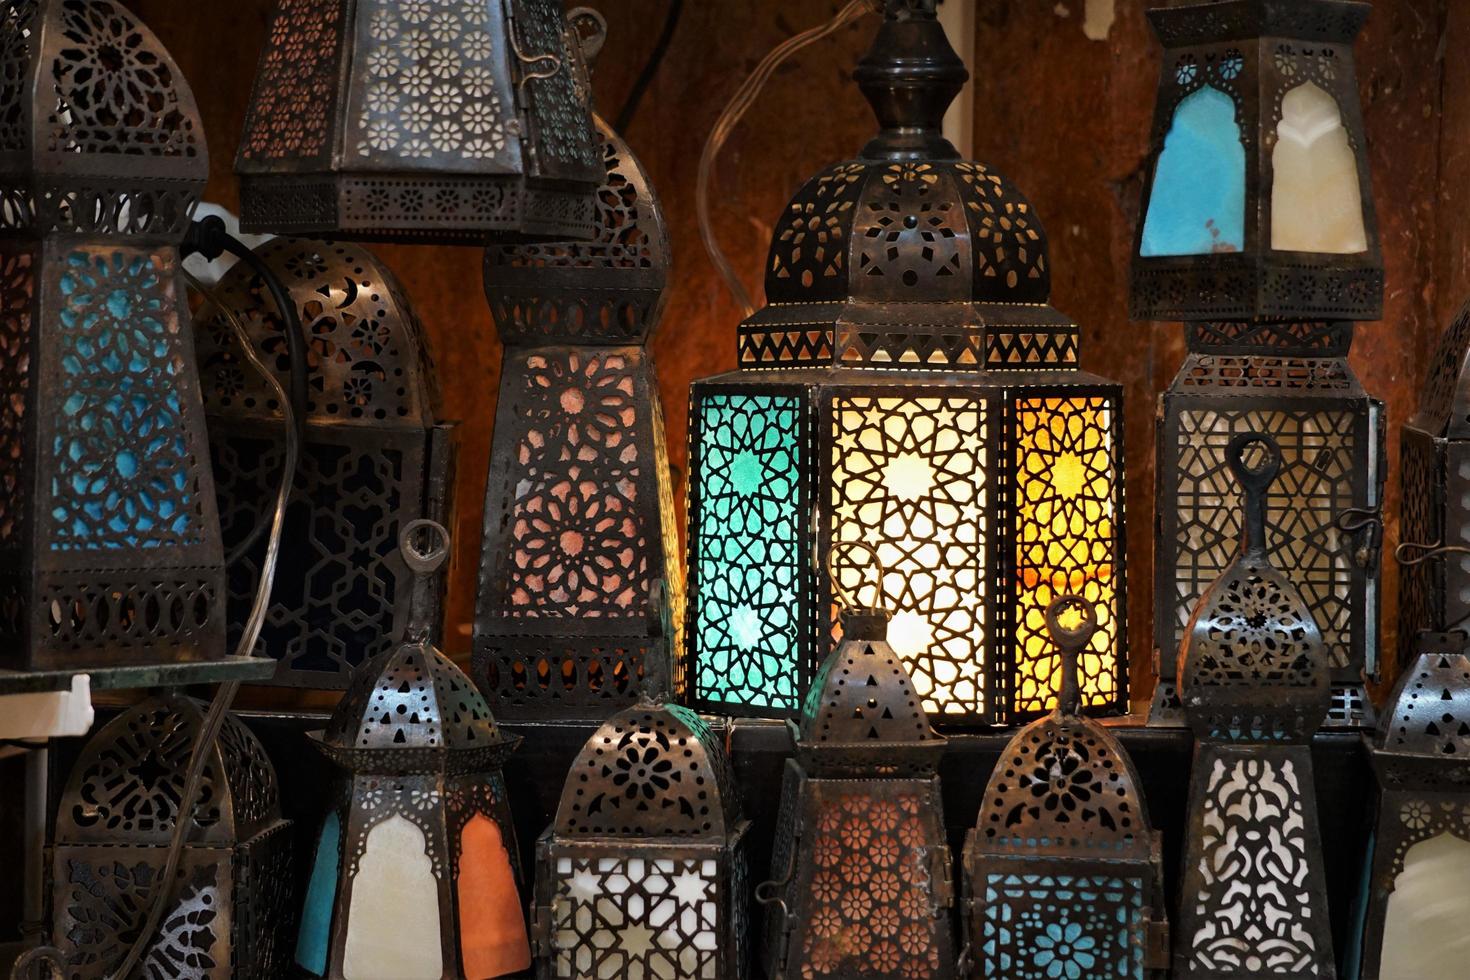 decoraciones orientales como fanoos para el mes de ramadán en el mercado, el cairo, egipto. foto